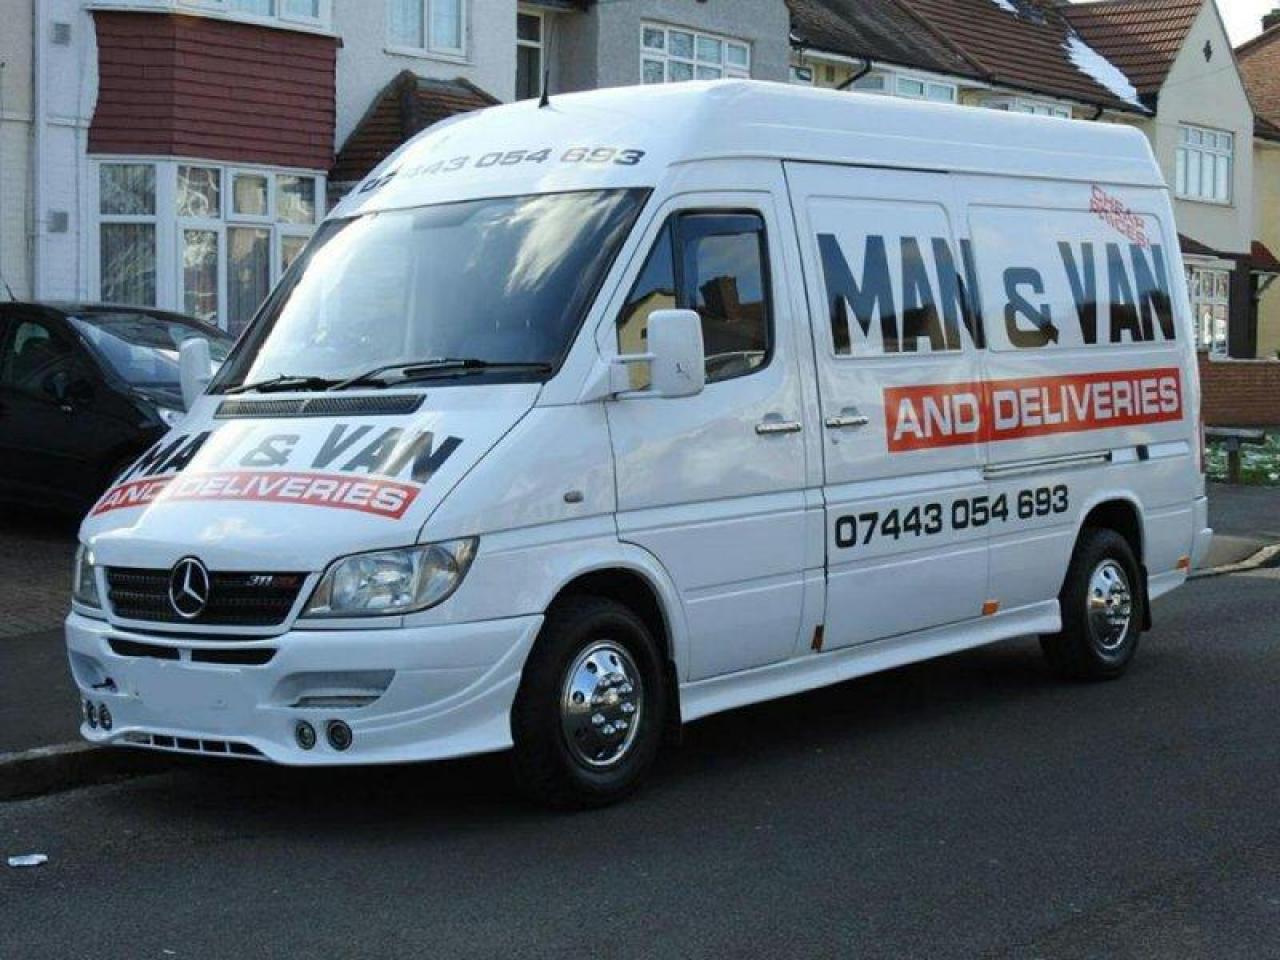 Man and Van in London - Переезды, перевозки, доставка любых грузов и товаров - от £30 - 1